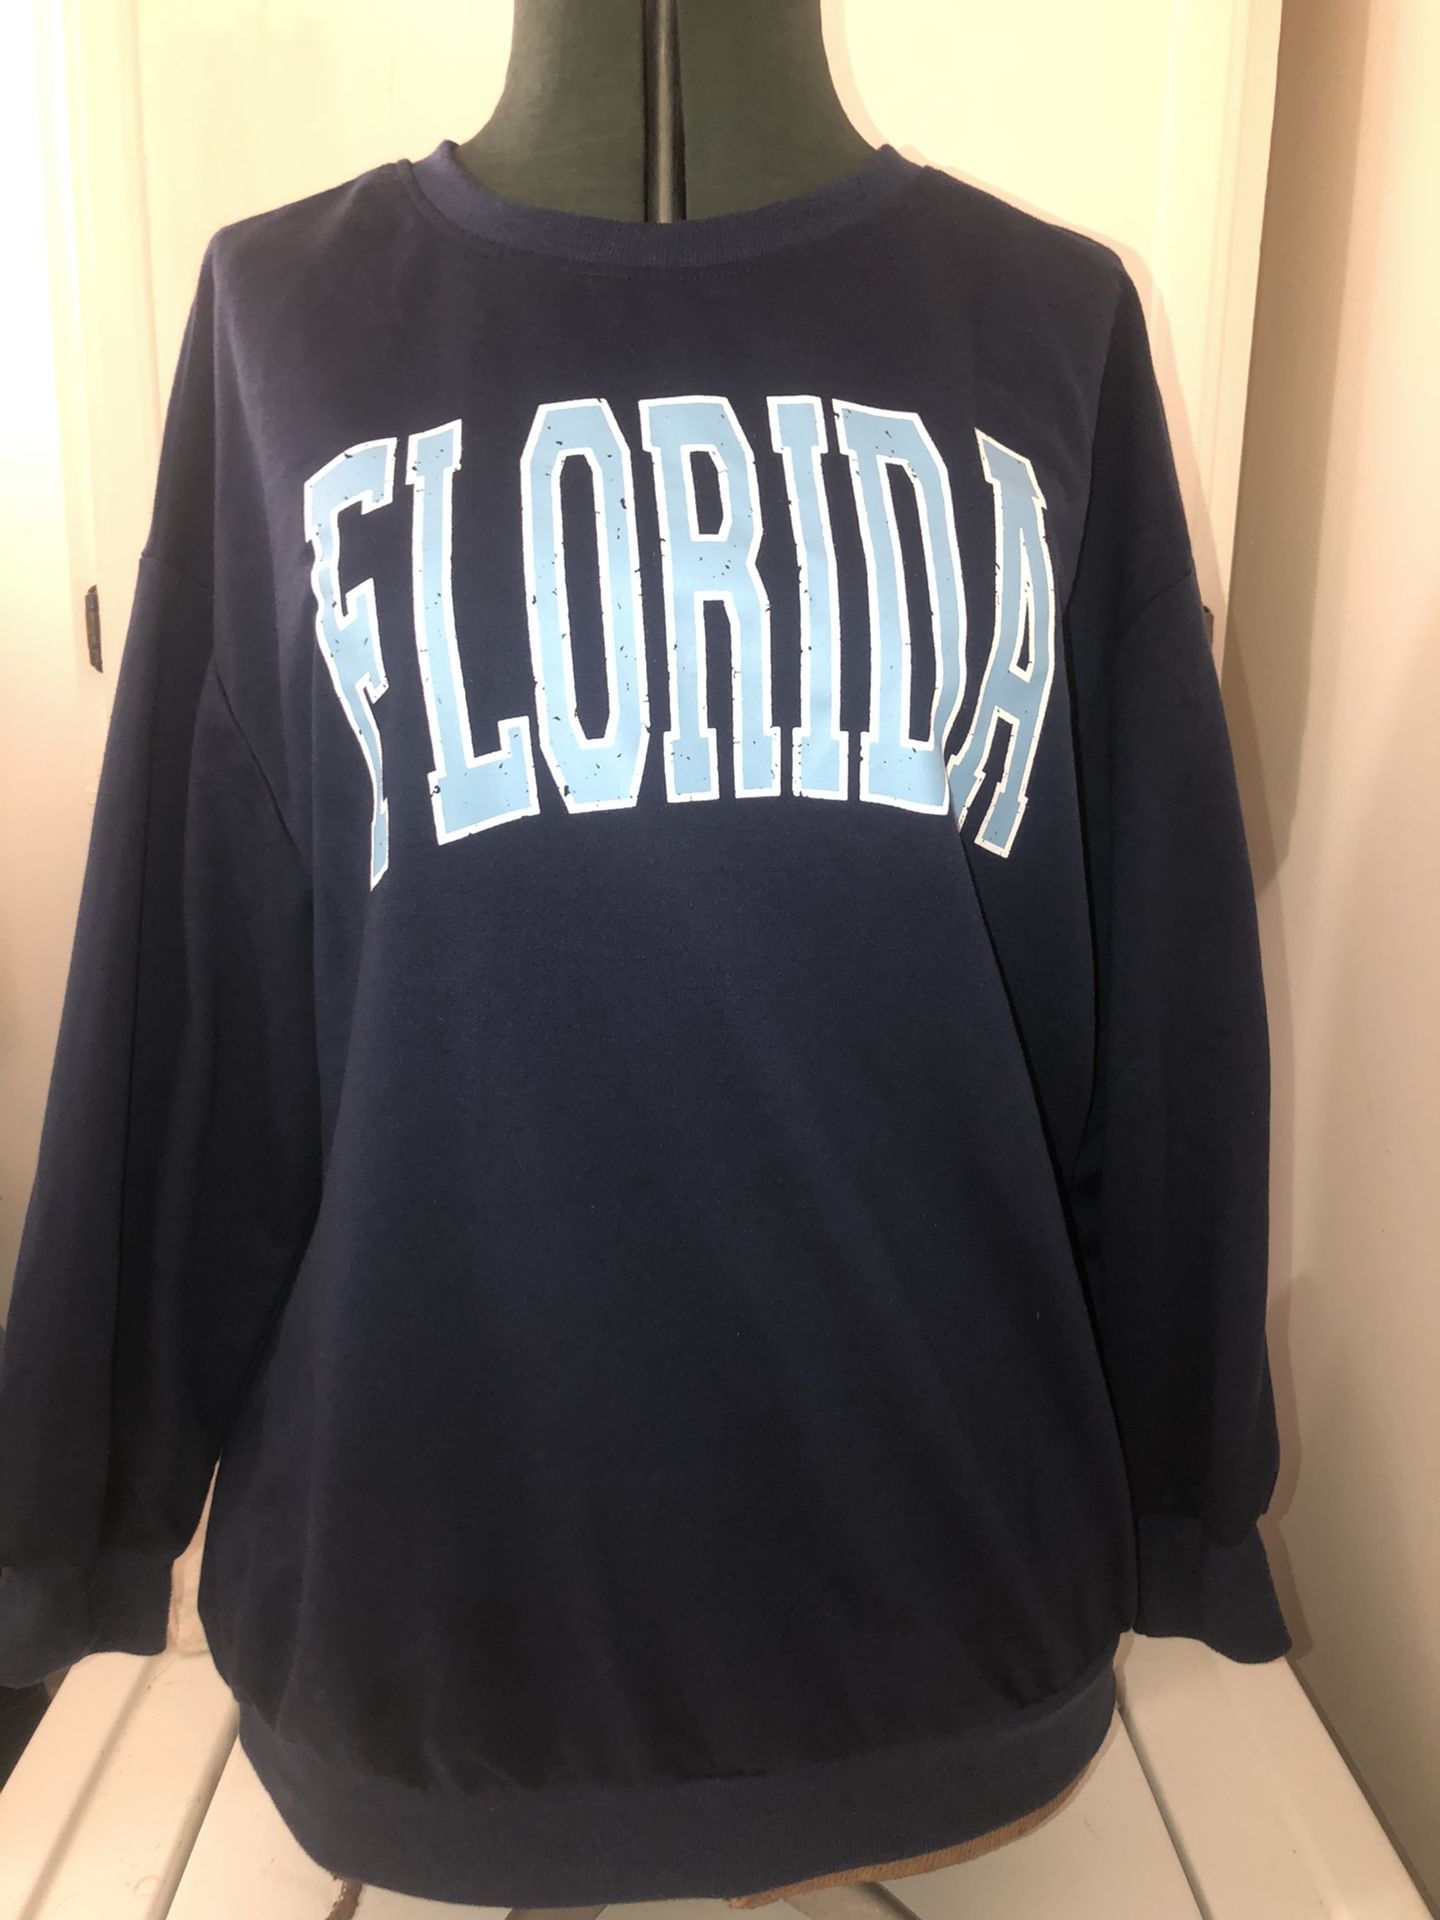 Florida Sweatshirt 